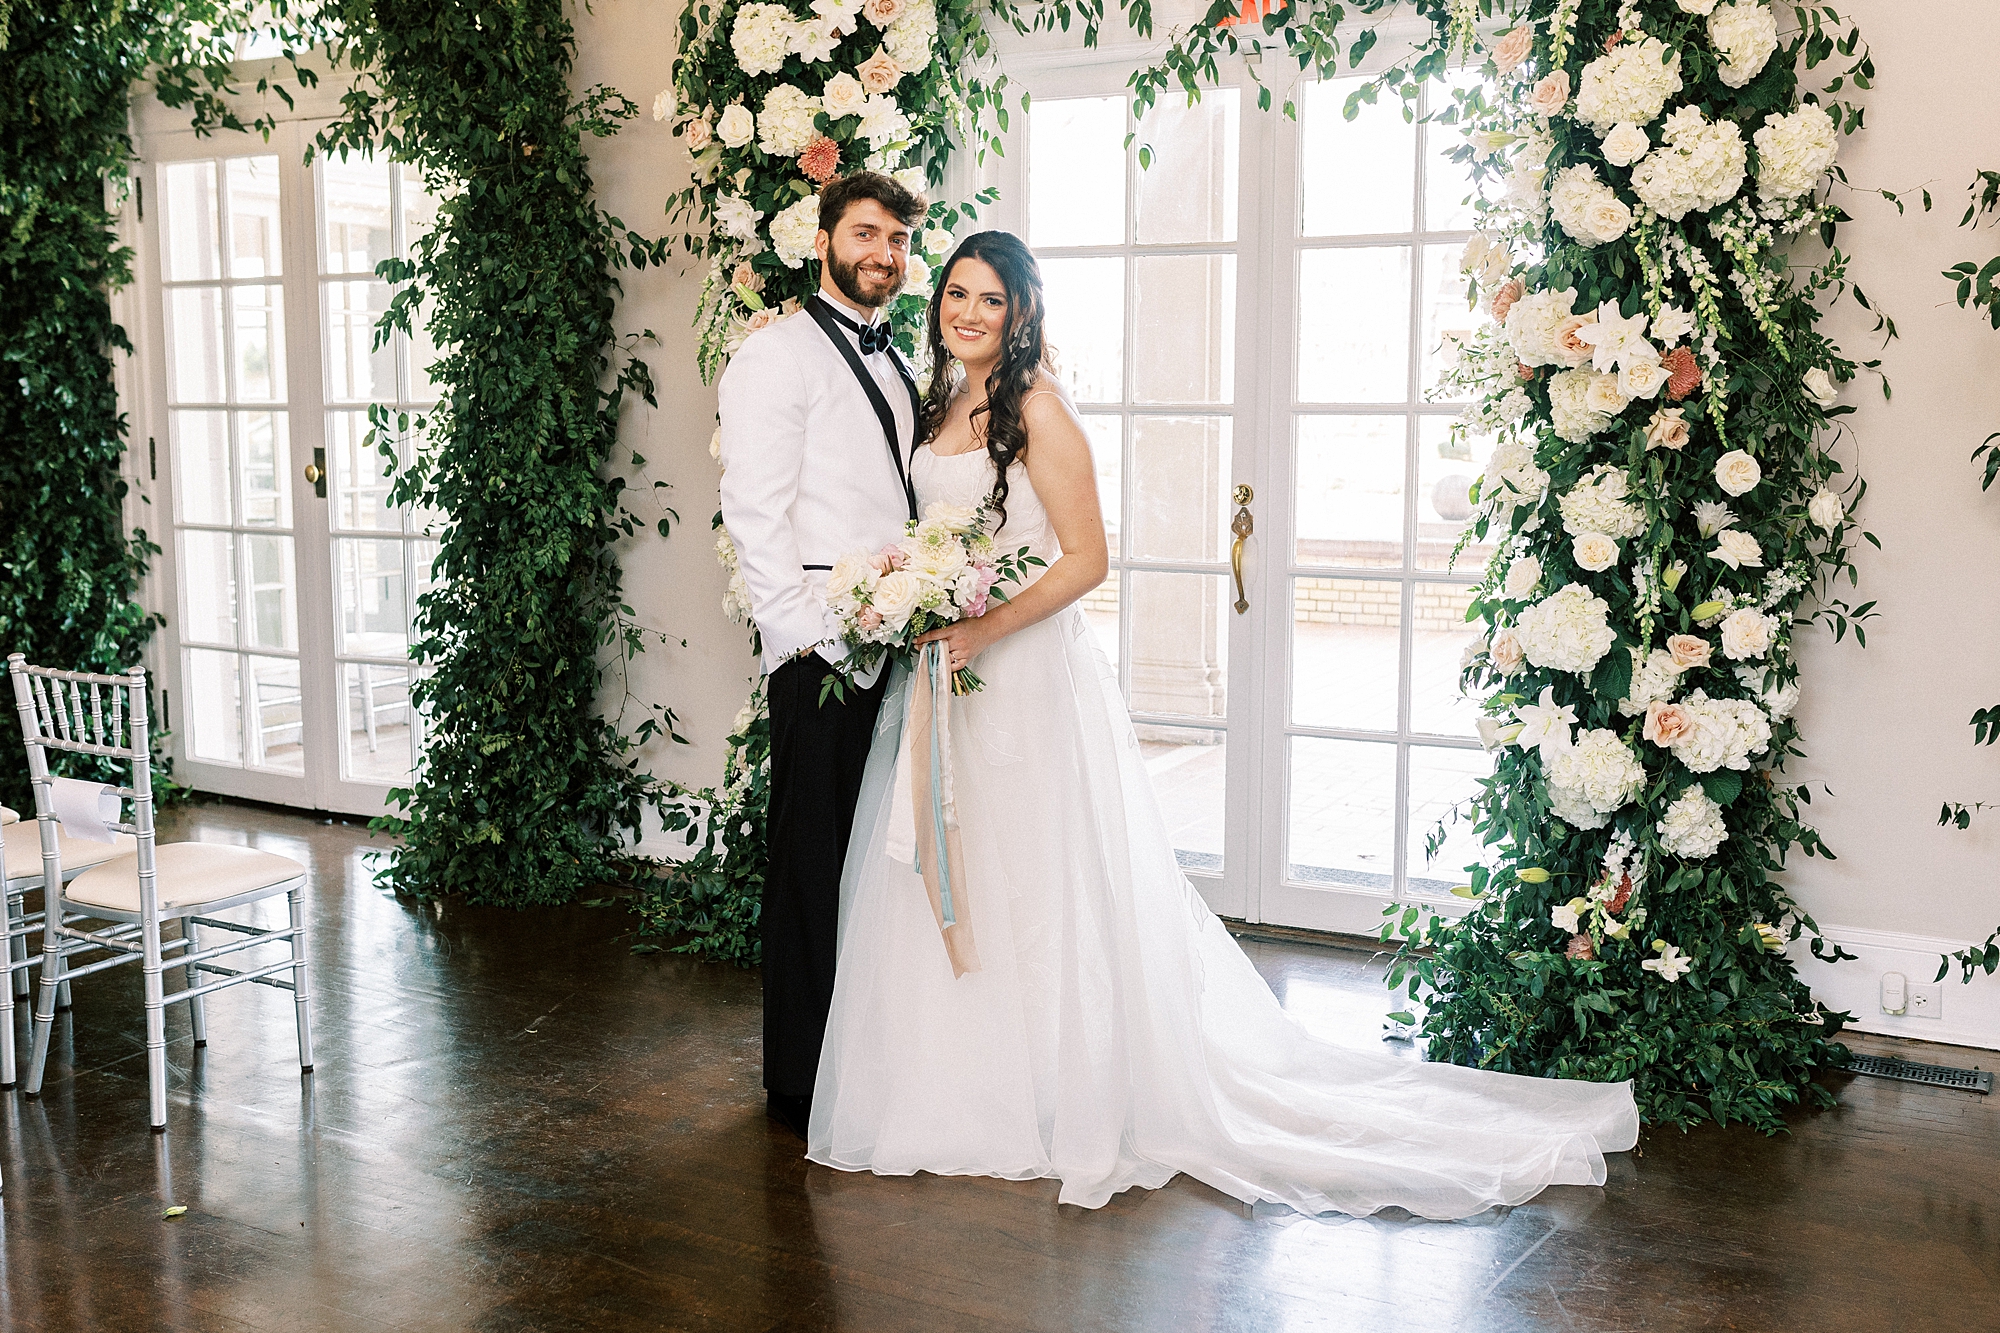 newlyweds hug by floral arbor inside Separk Mansion